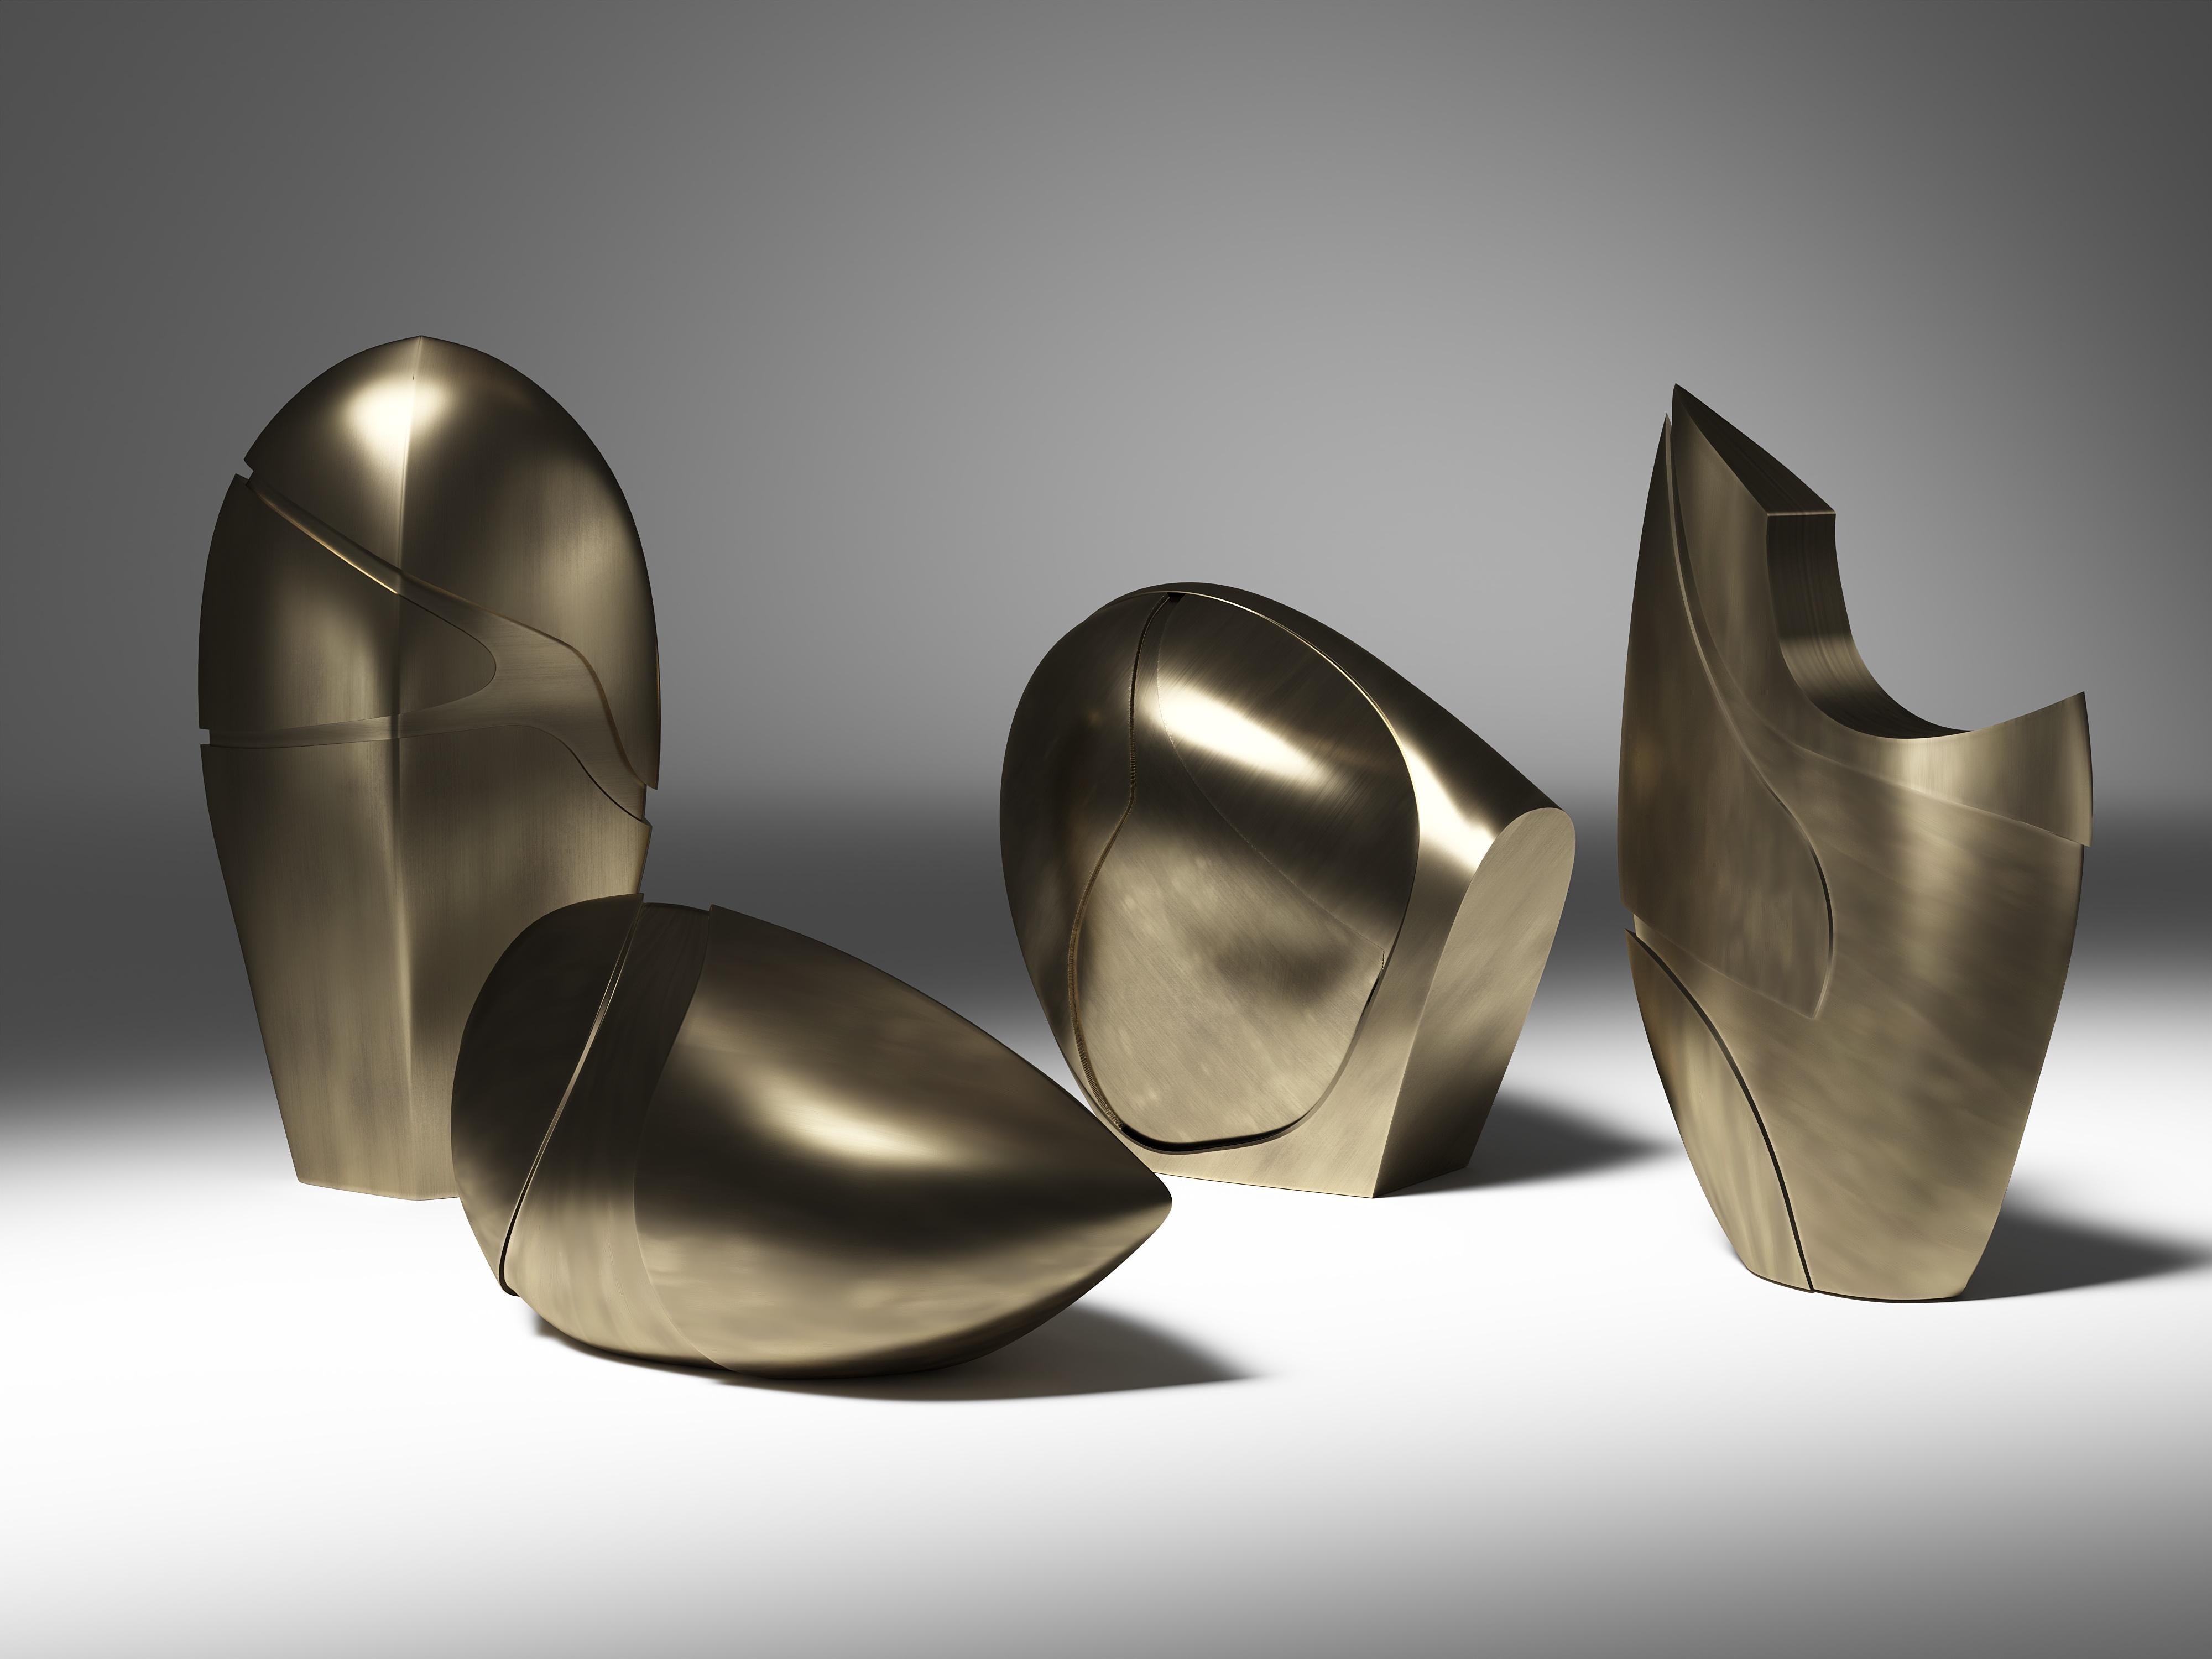 Patrick Coard Paris lance une collection d'objets sculpturaux uniques et magnifiques. L'ensemble de sculptures amorphes en laiton bronze-patine sont audacieuses et organiques dans leurs formes uniques avec des indentations métalliques subtiles pour